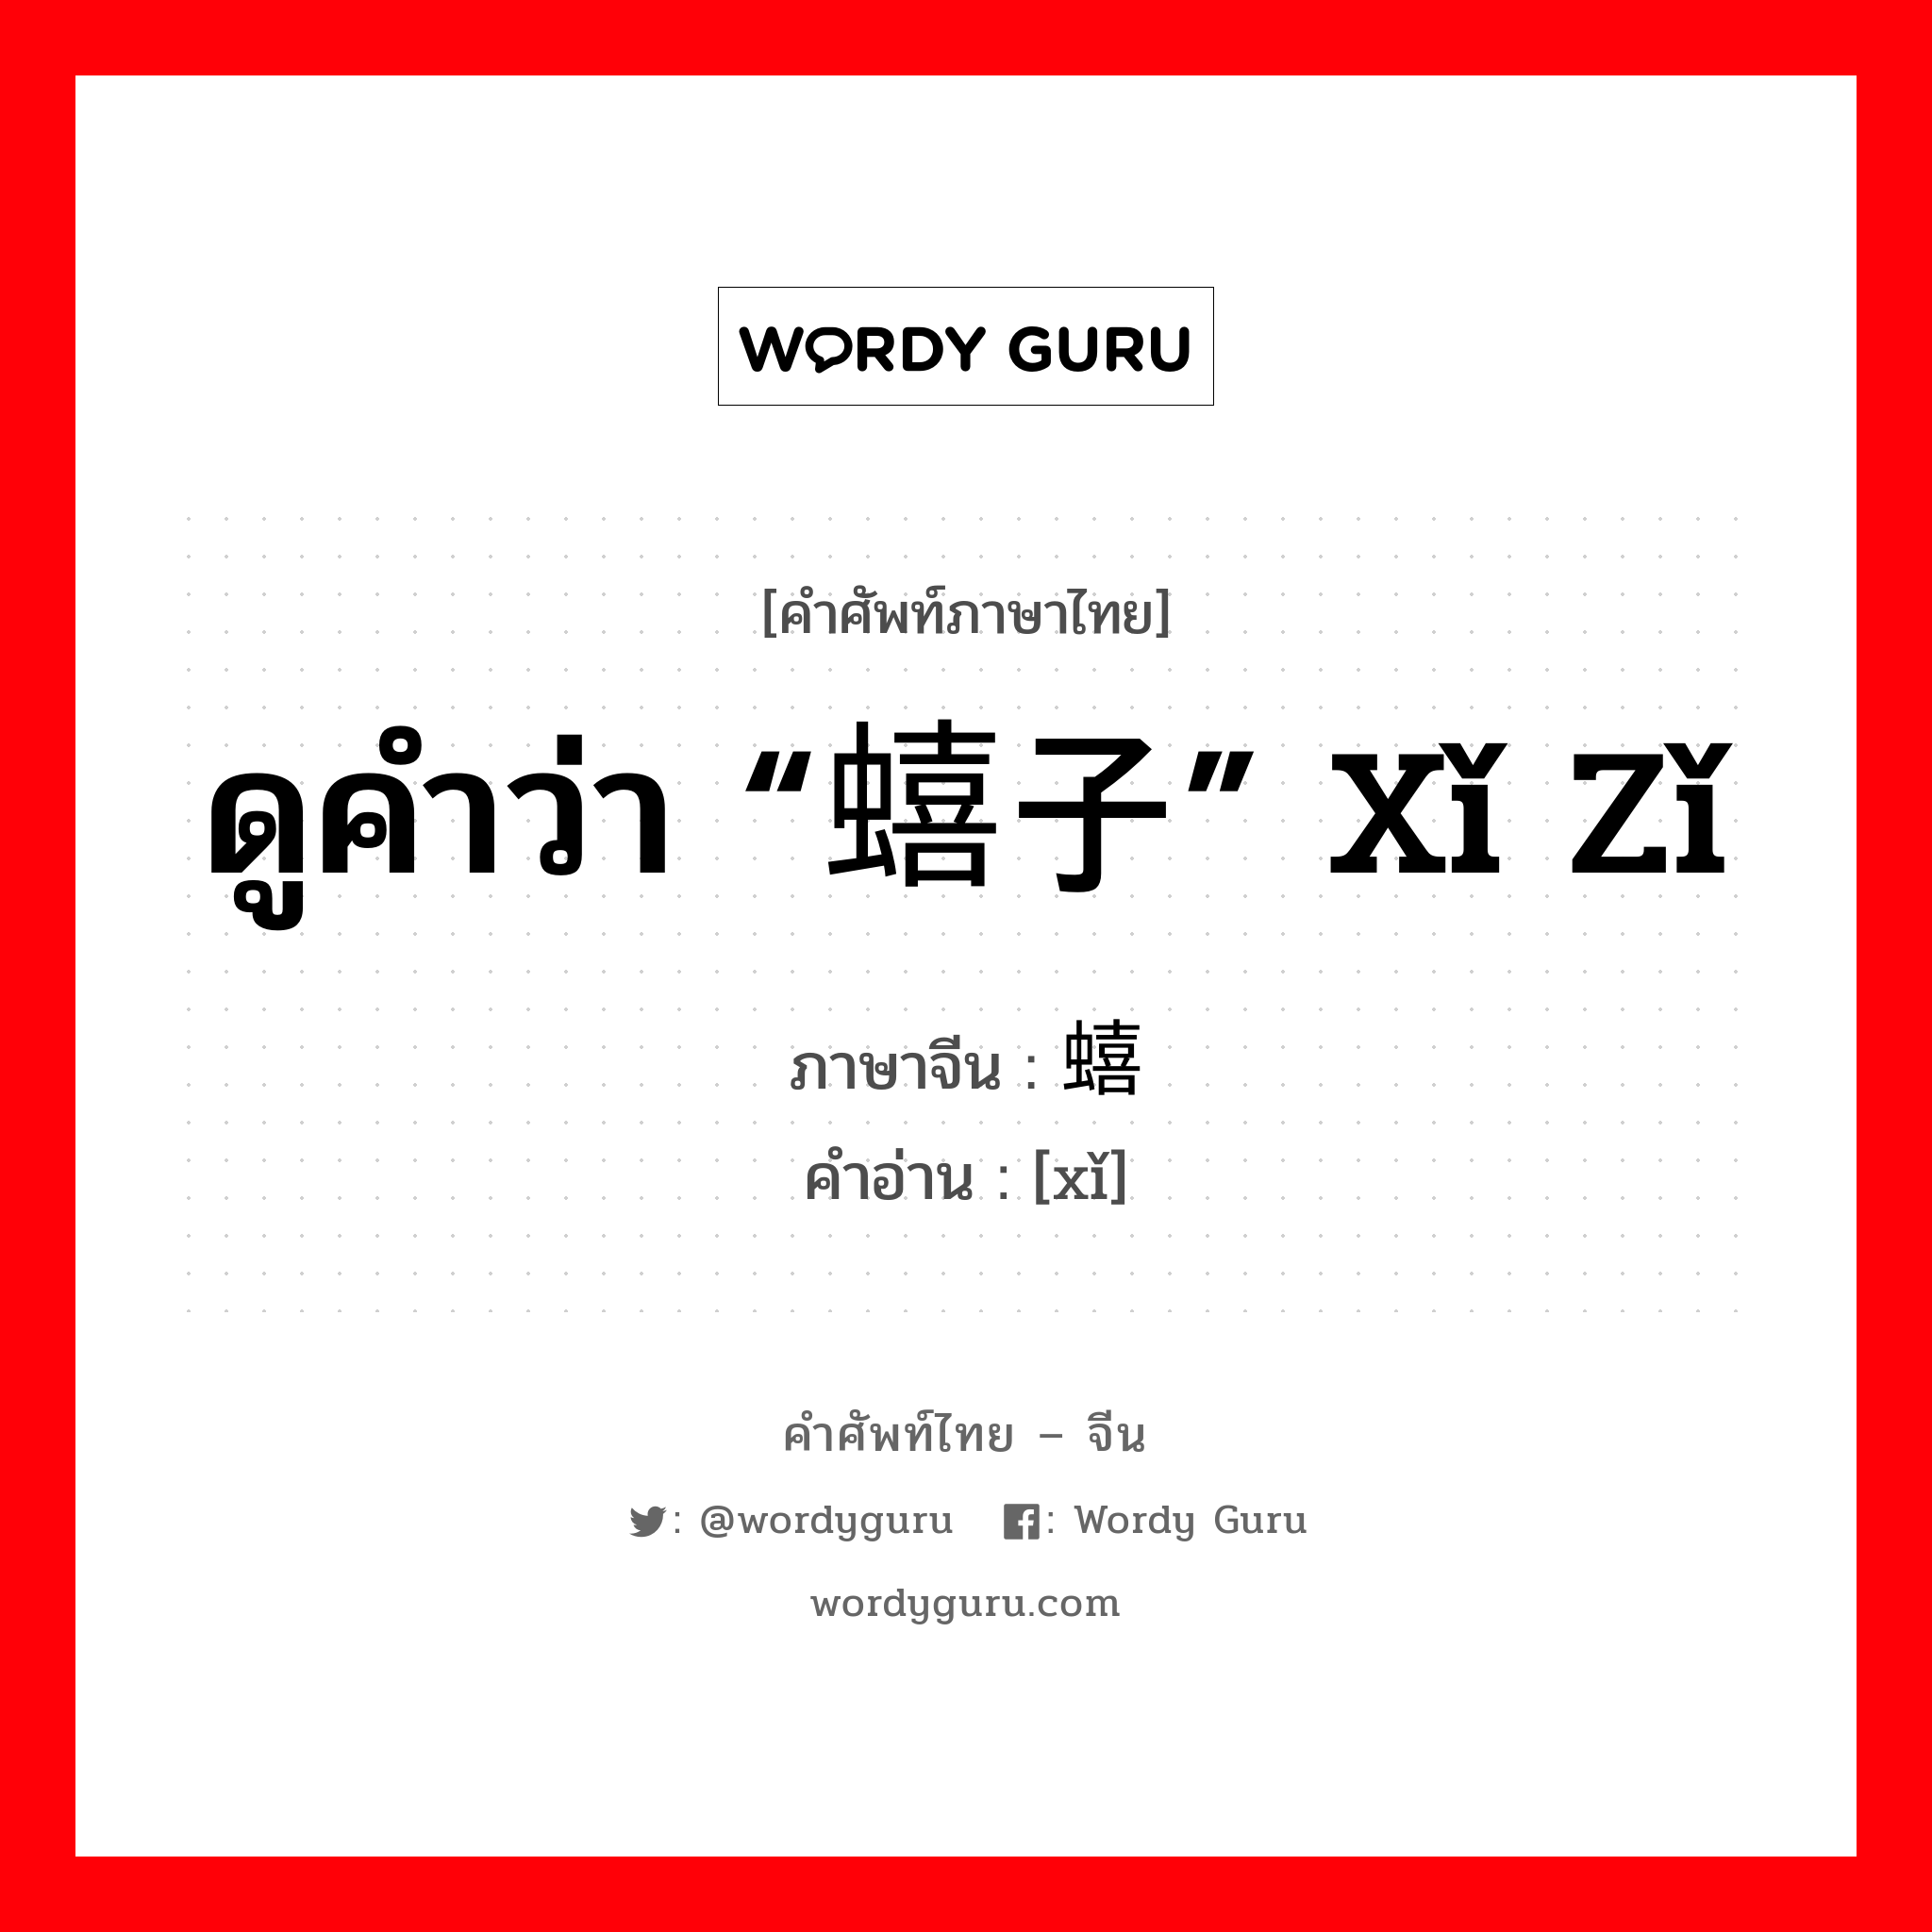 ดูคำว่า “蟢子” xǐ zǐ ภาษาจีนคืออะไร, คำศัพท์ภาษาไทย - จีน ดูคำว่า “蟢子” xǐ zǐ ภาษาจีน 蟢 คำอ่าน [xǐ]